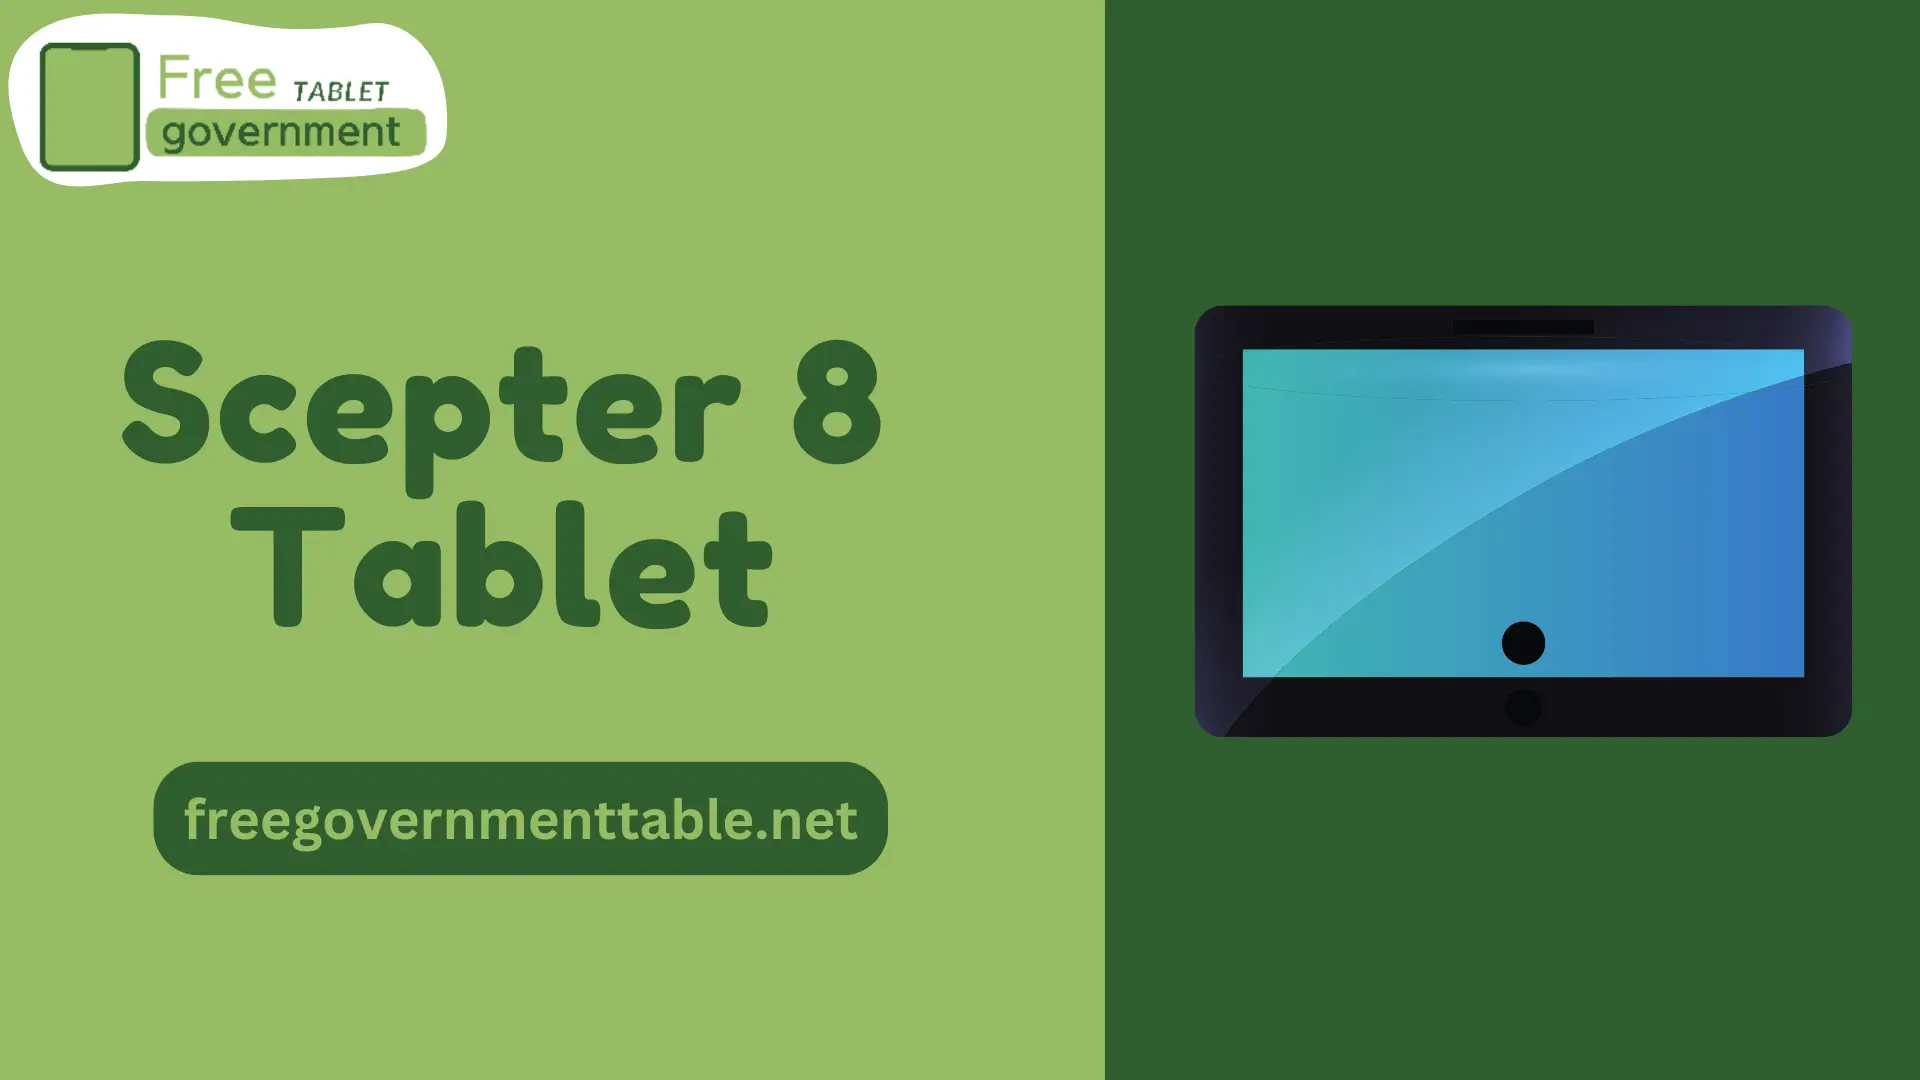 Scepter 8 Tablet